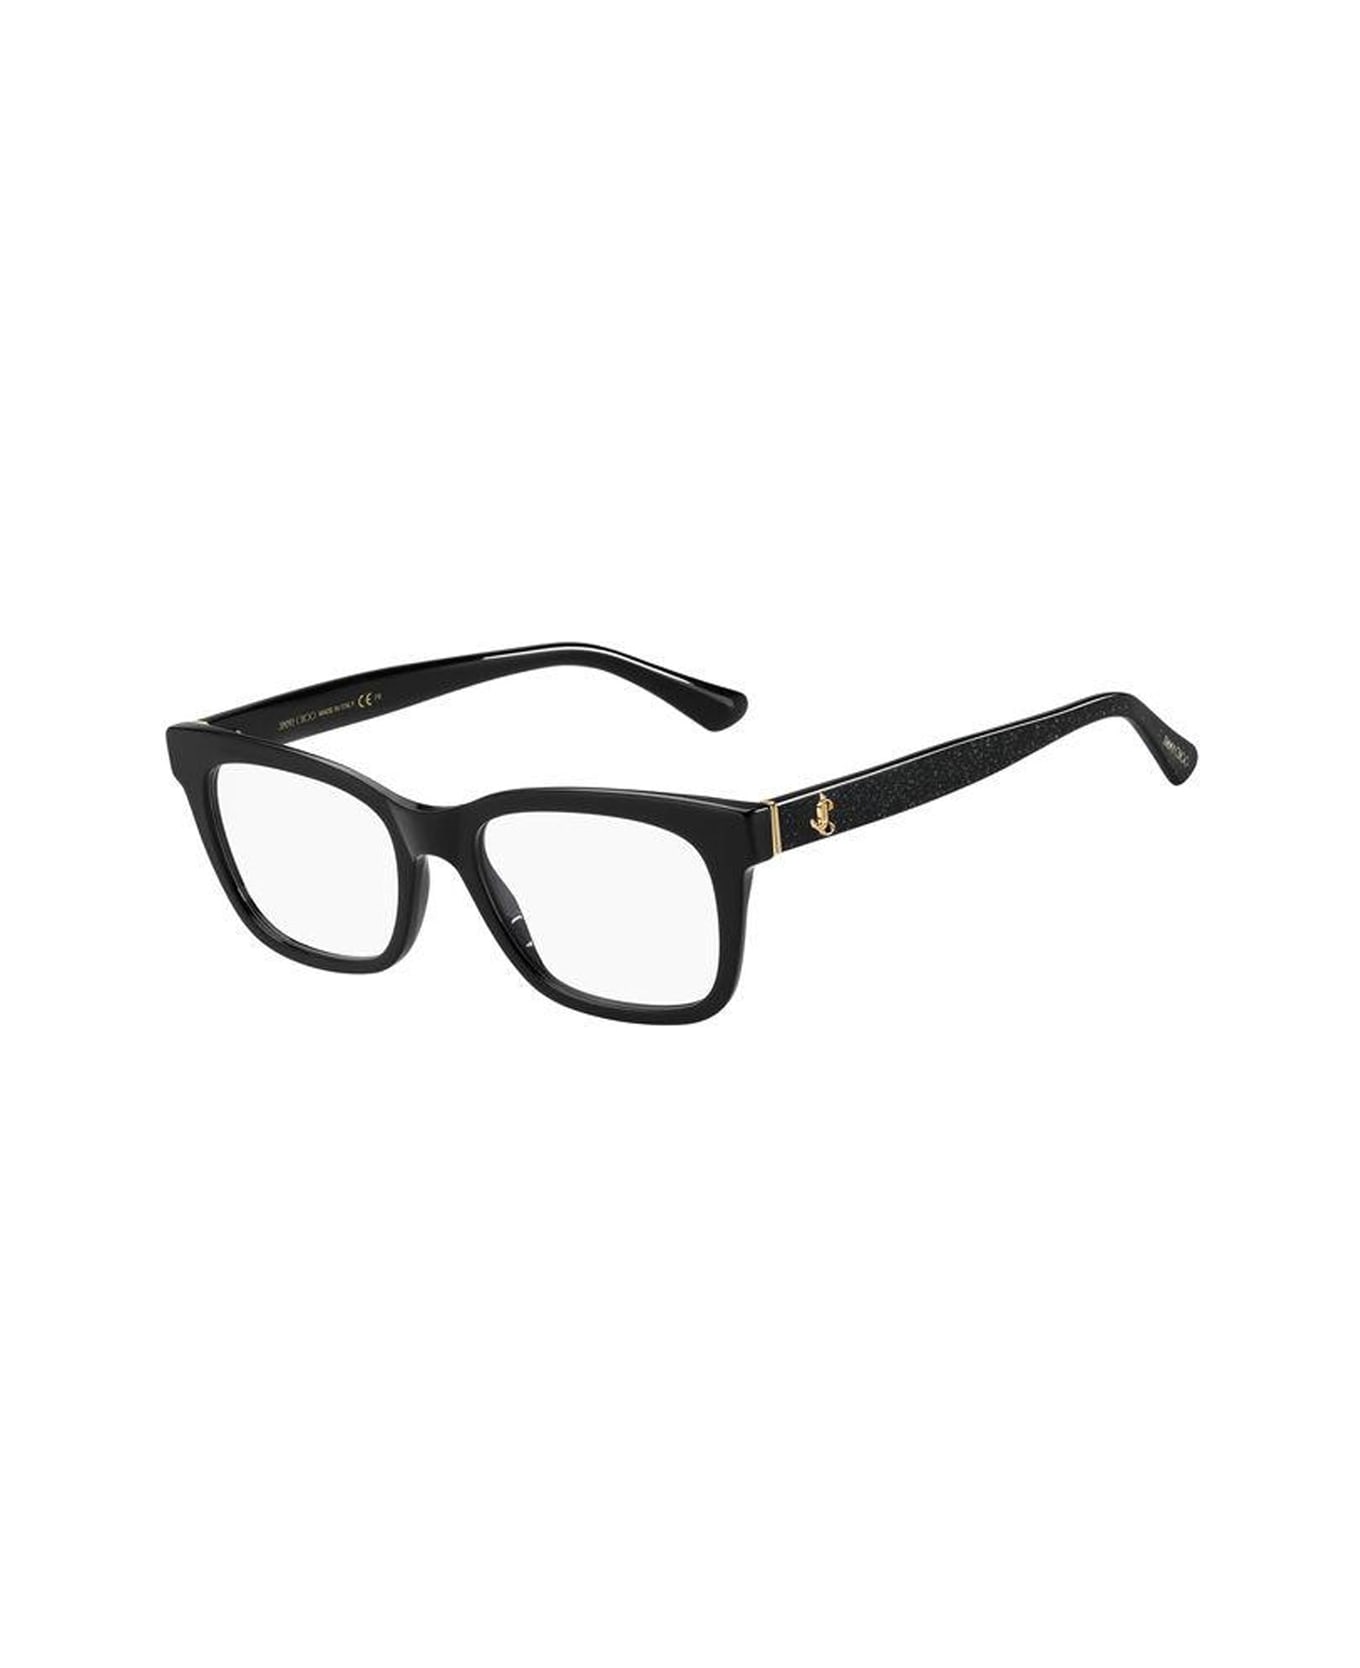 Jimmy Choo Eyewear Jc277 Glasses - Nero アイウェア